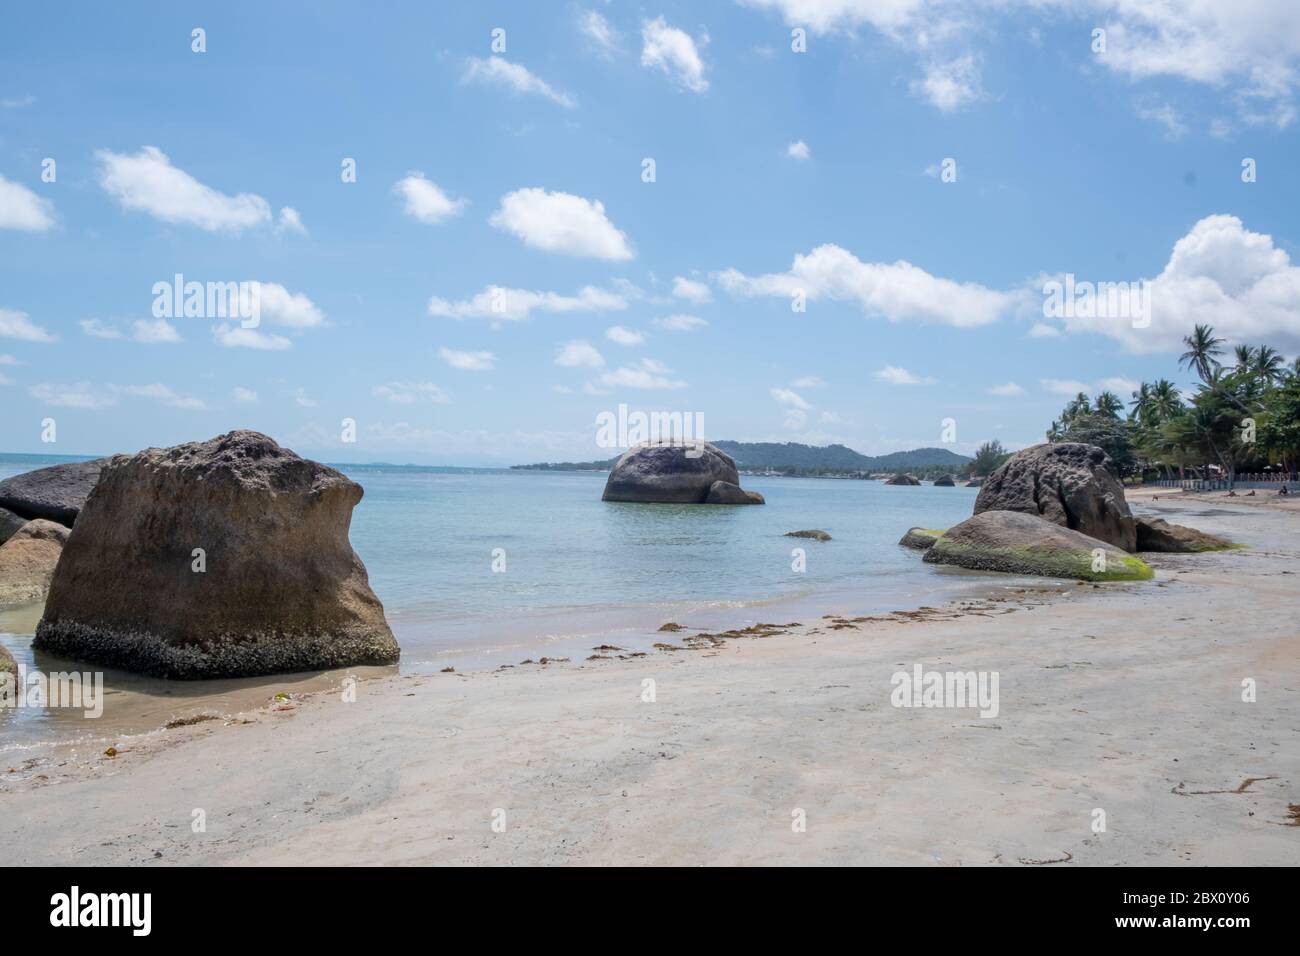 Spiaggia vuota sull'isola di Koh Samui Foto Stock